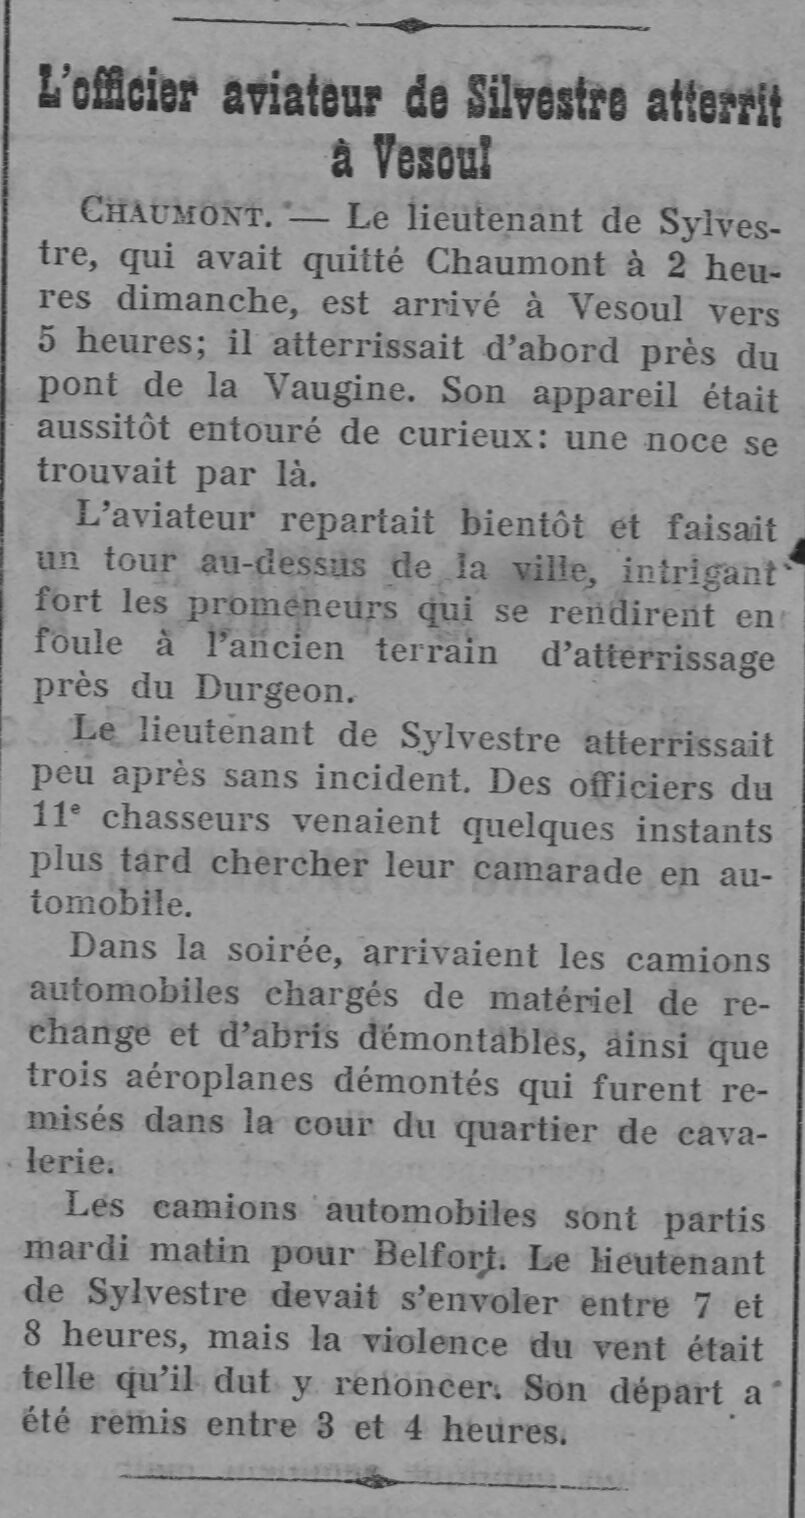  L’officier aviateur de Silvestre atterrit à Vesoul - Document 1